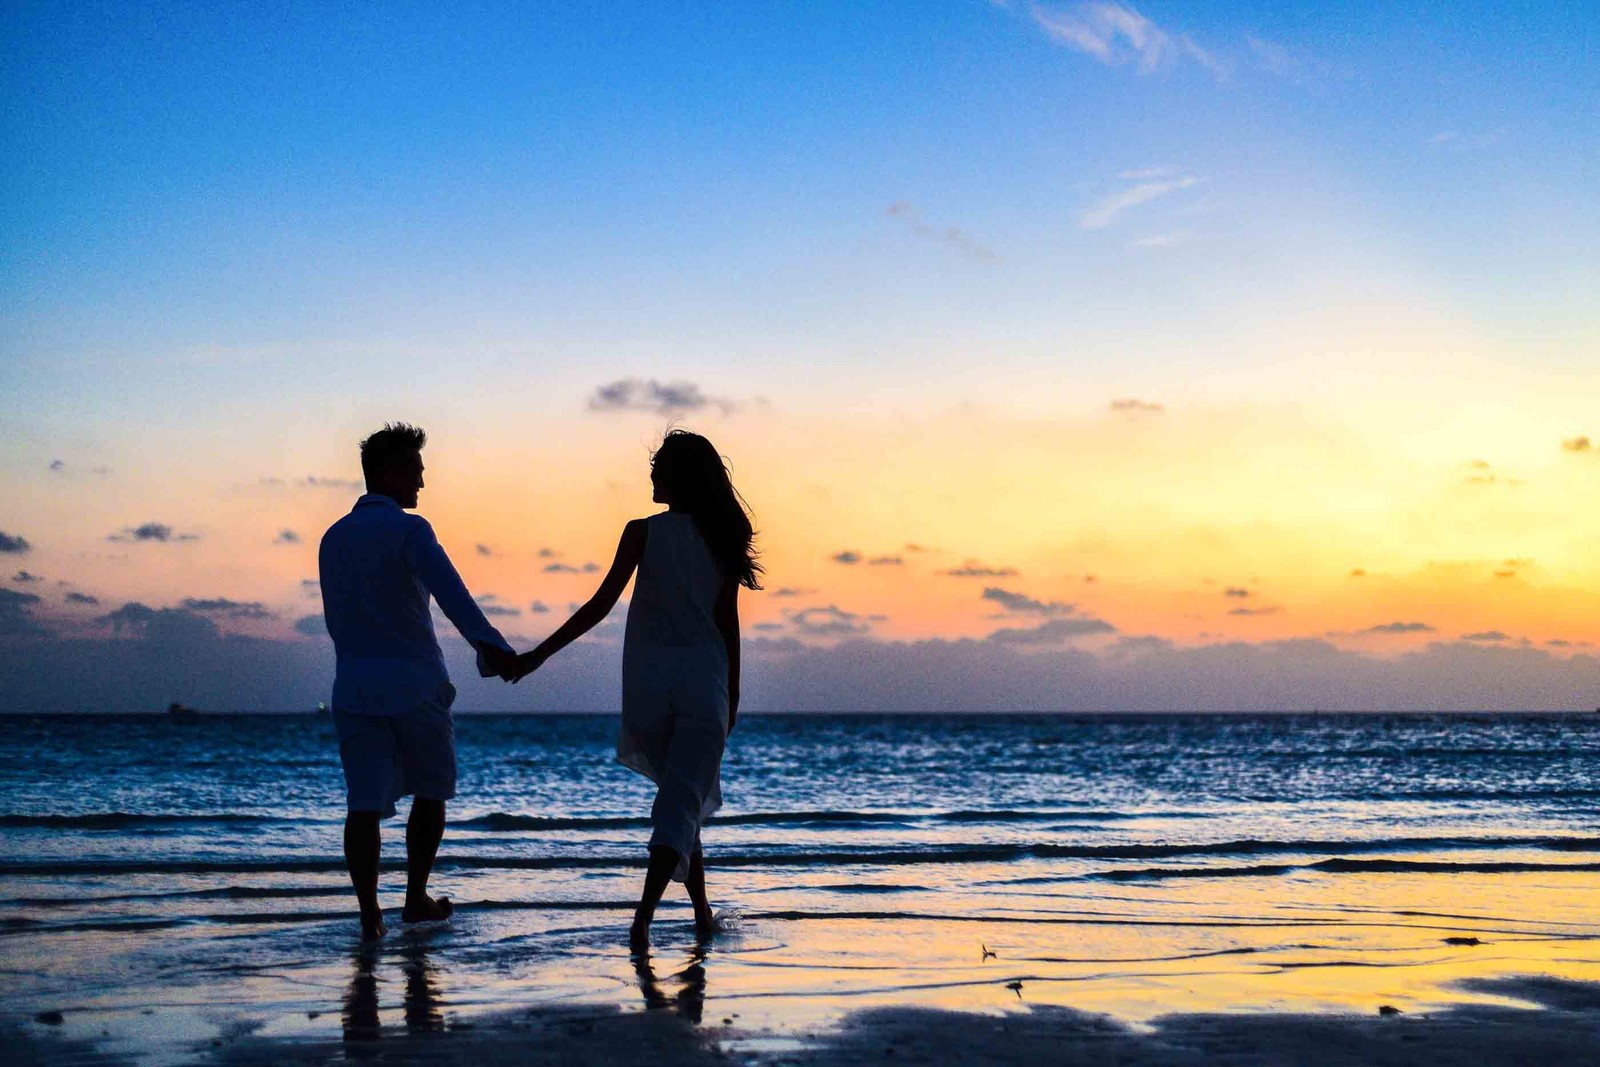 السياحة في المالديف لقضاء شهر عسل